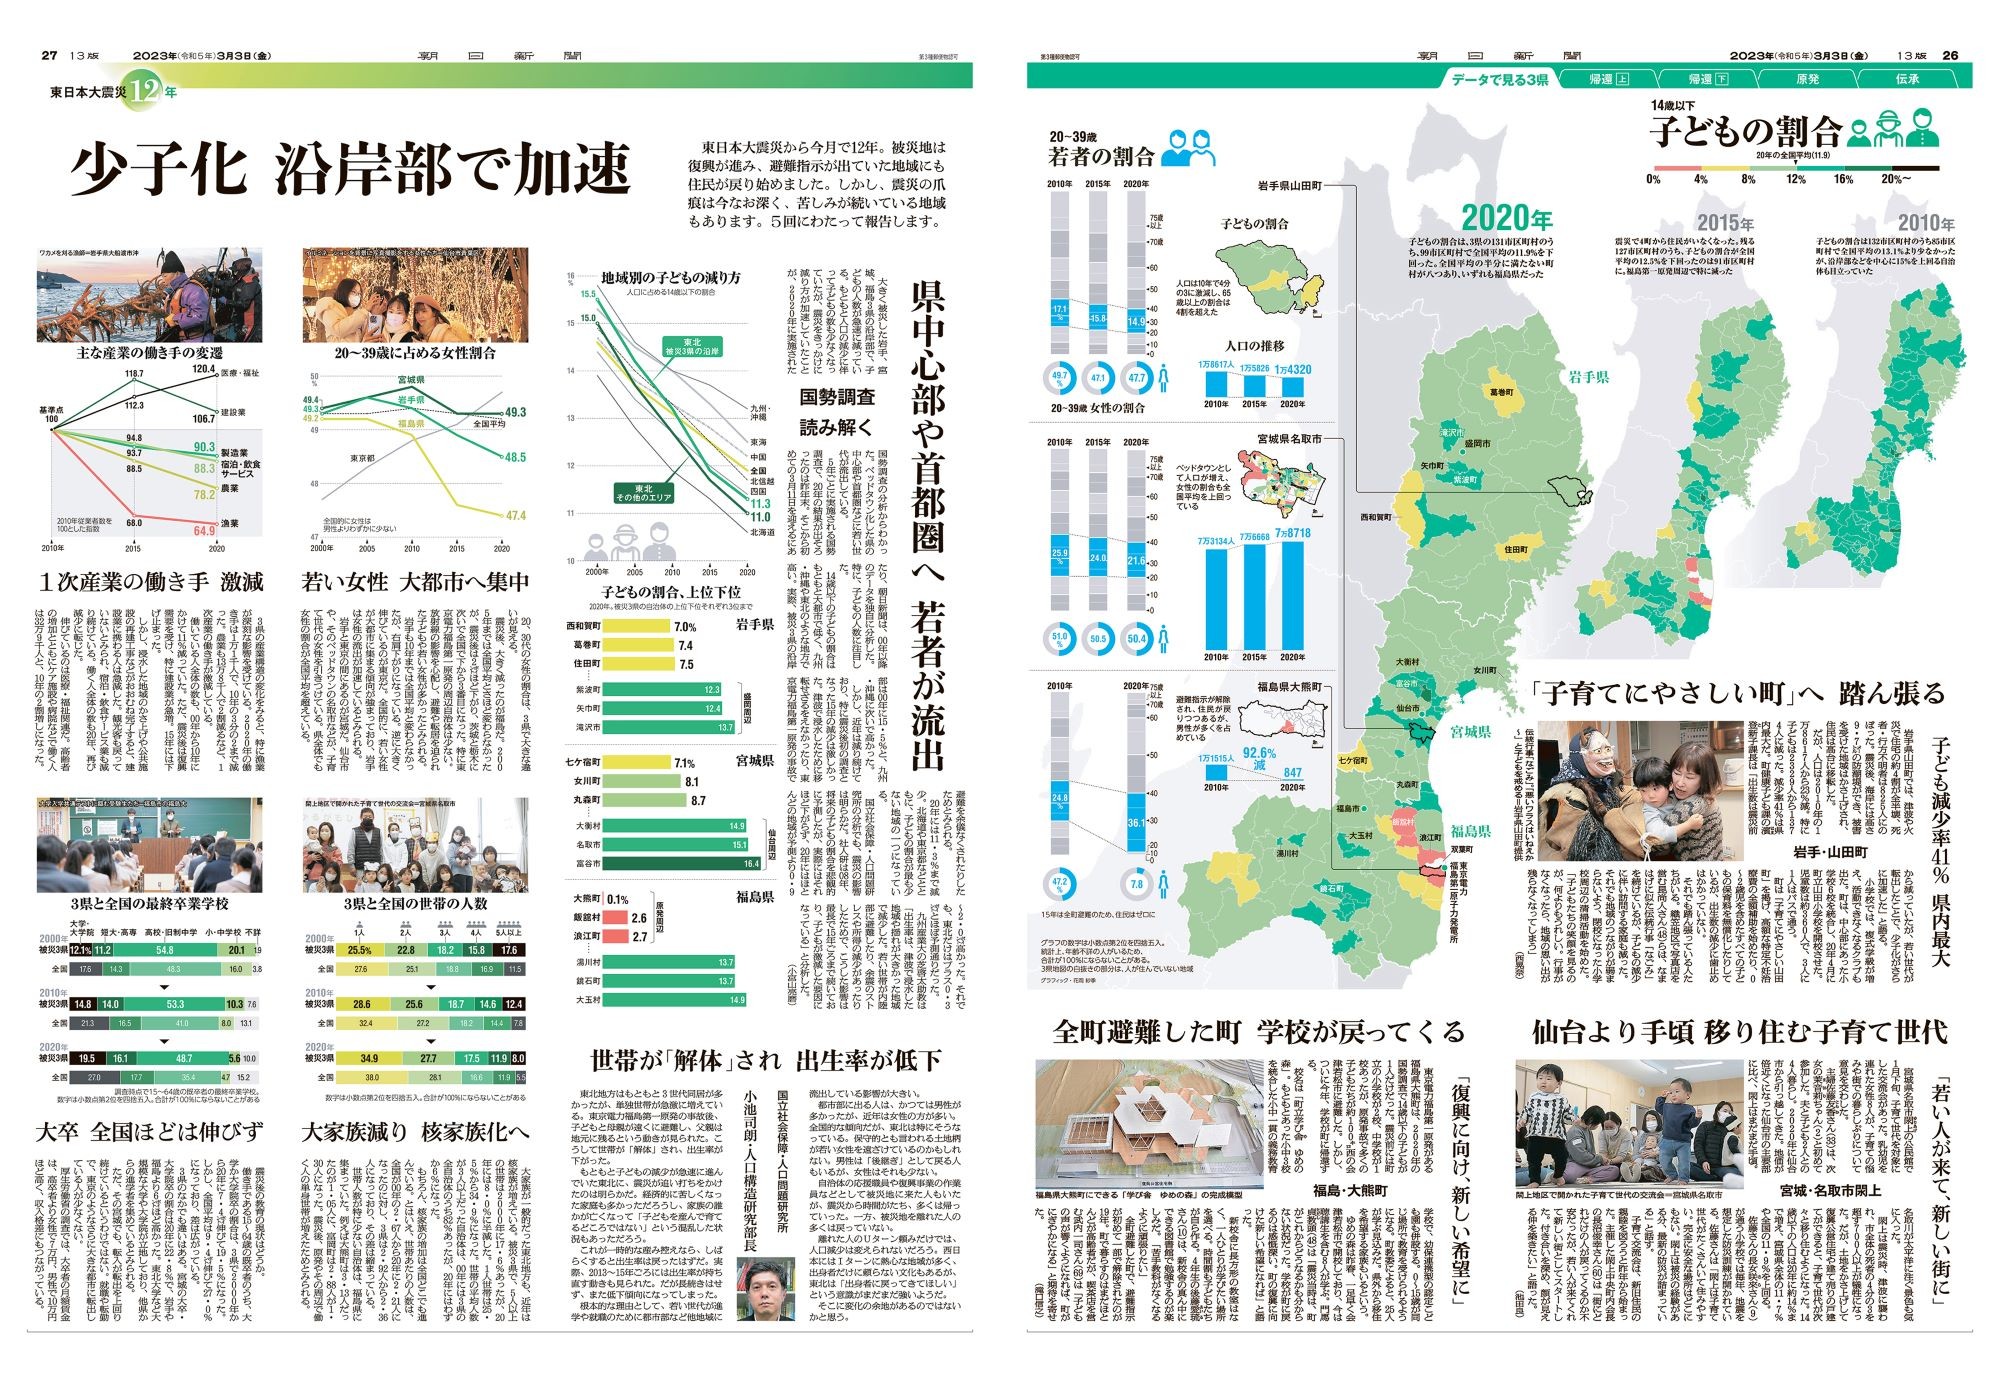 東日本大震災から12年の節目に組まれた特集。データで被災地の現状を可視化